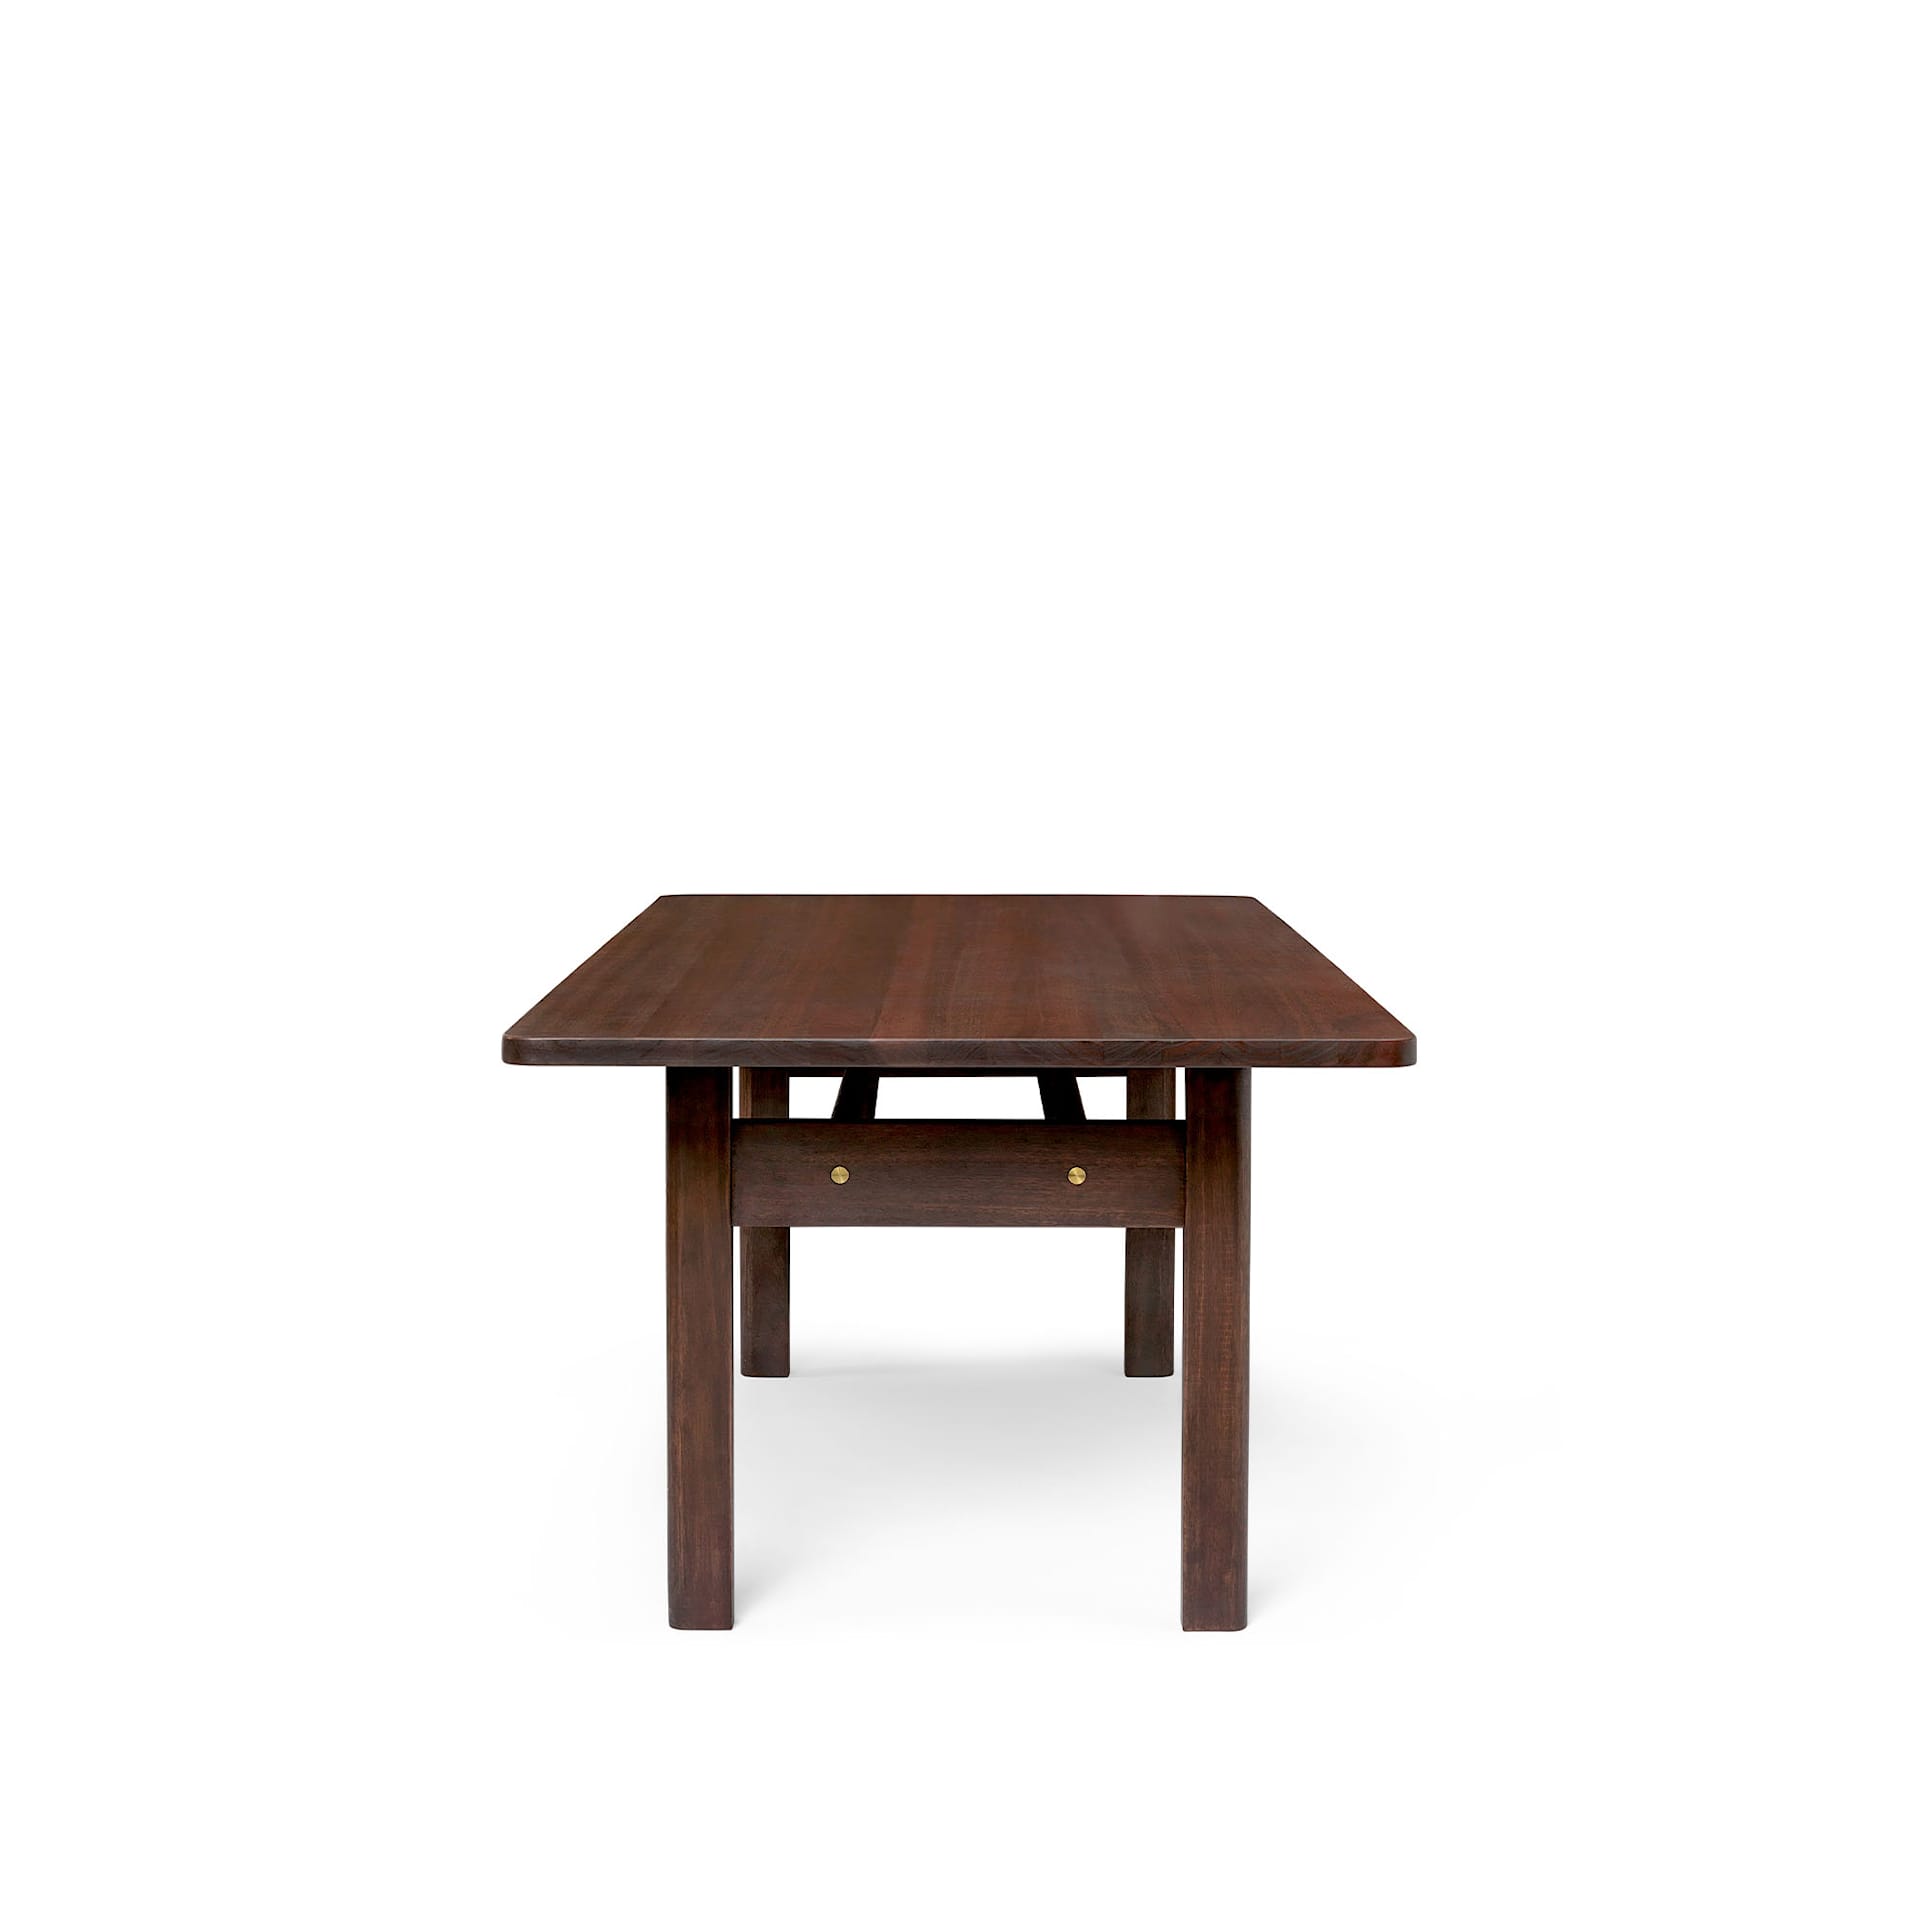 BM0698 Asserbo Table - Eucalyptus, Dark Oil - Carl Hansen - Børge Mogensen - NO GA